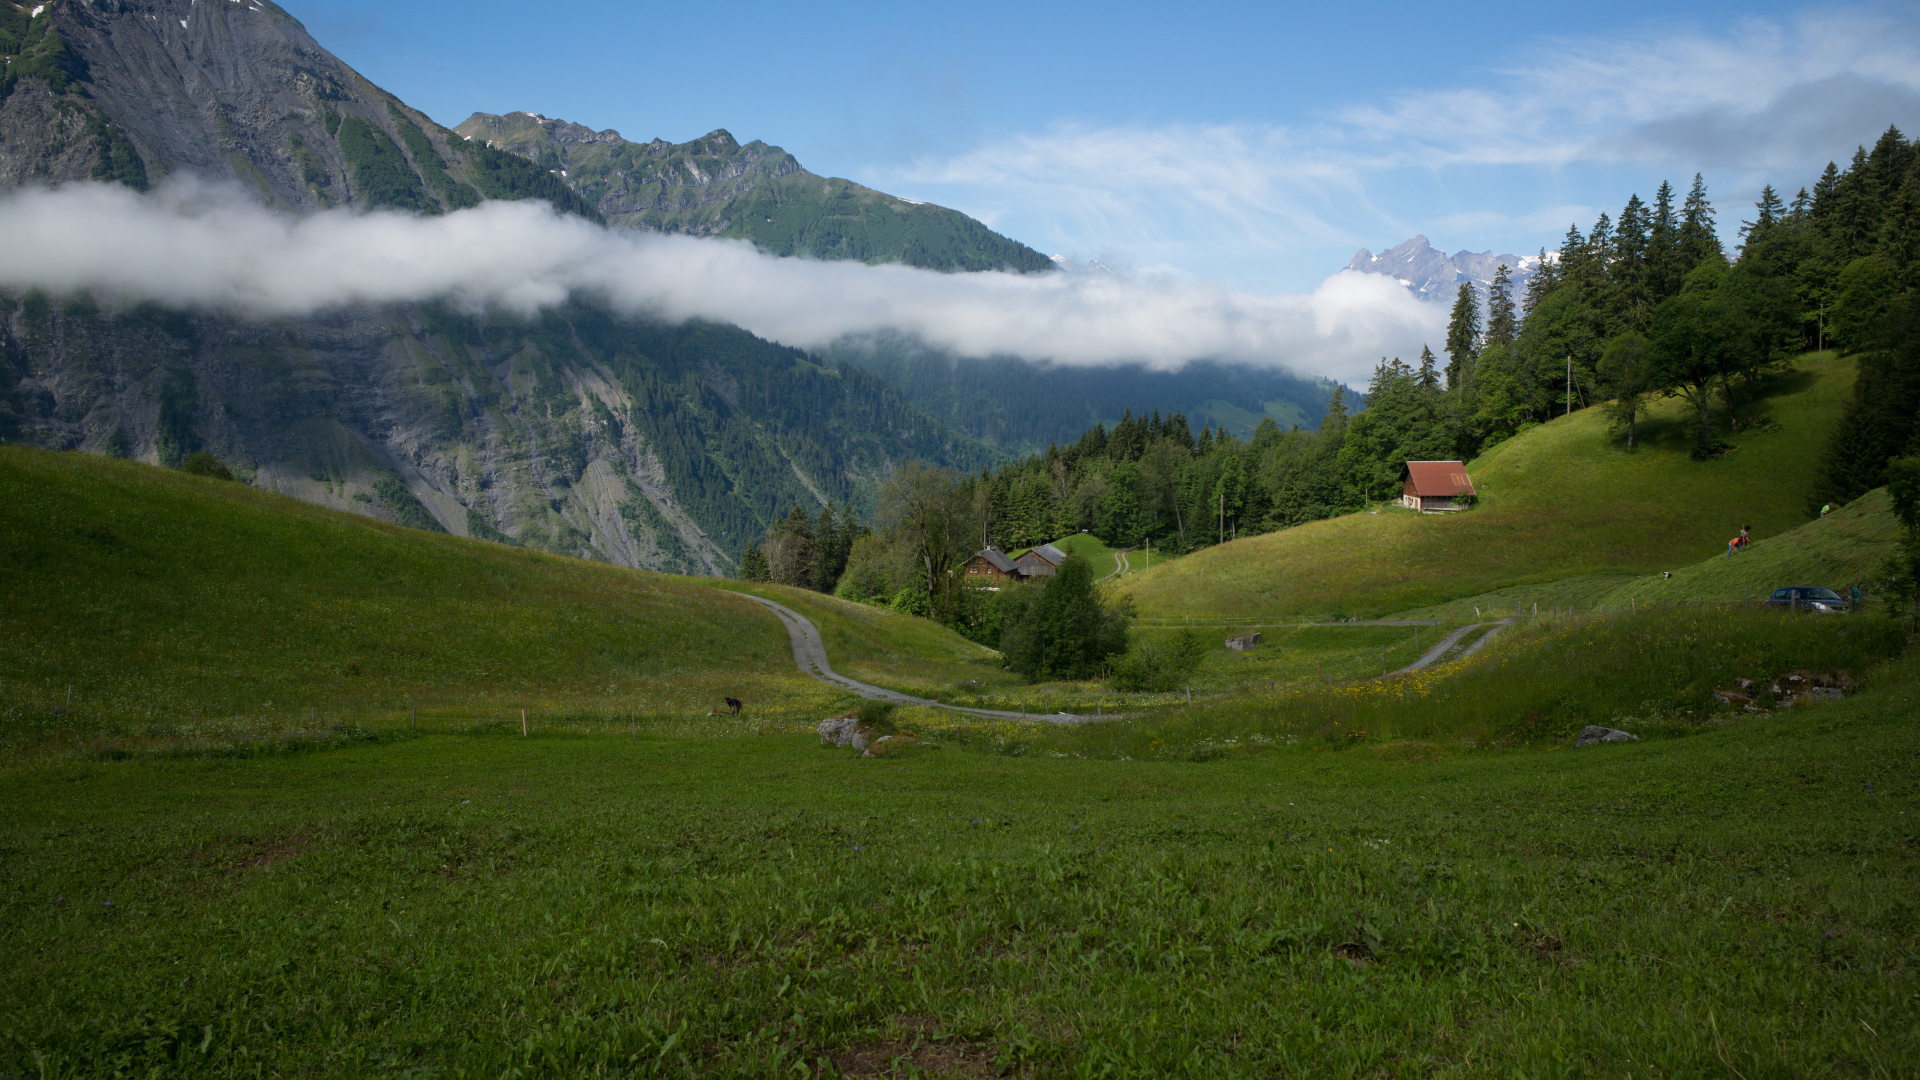 Швейцарские альпы в белых облаках 